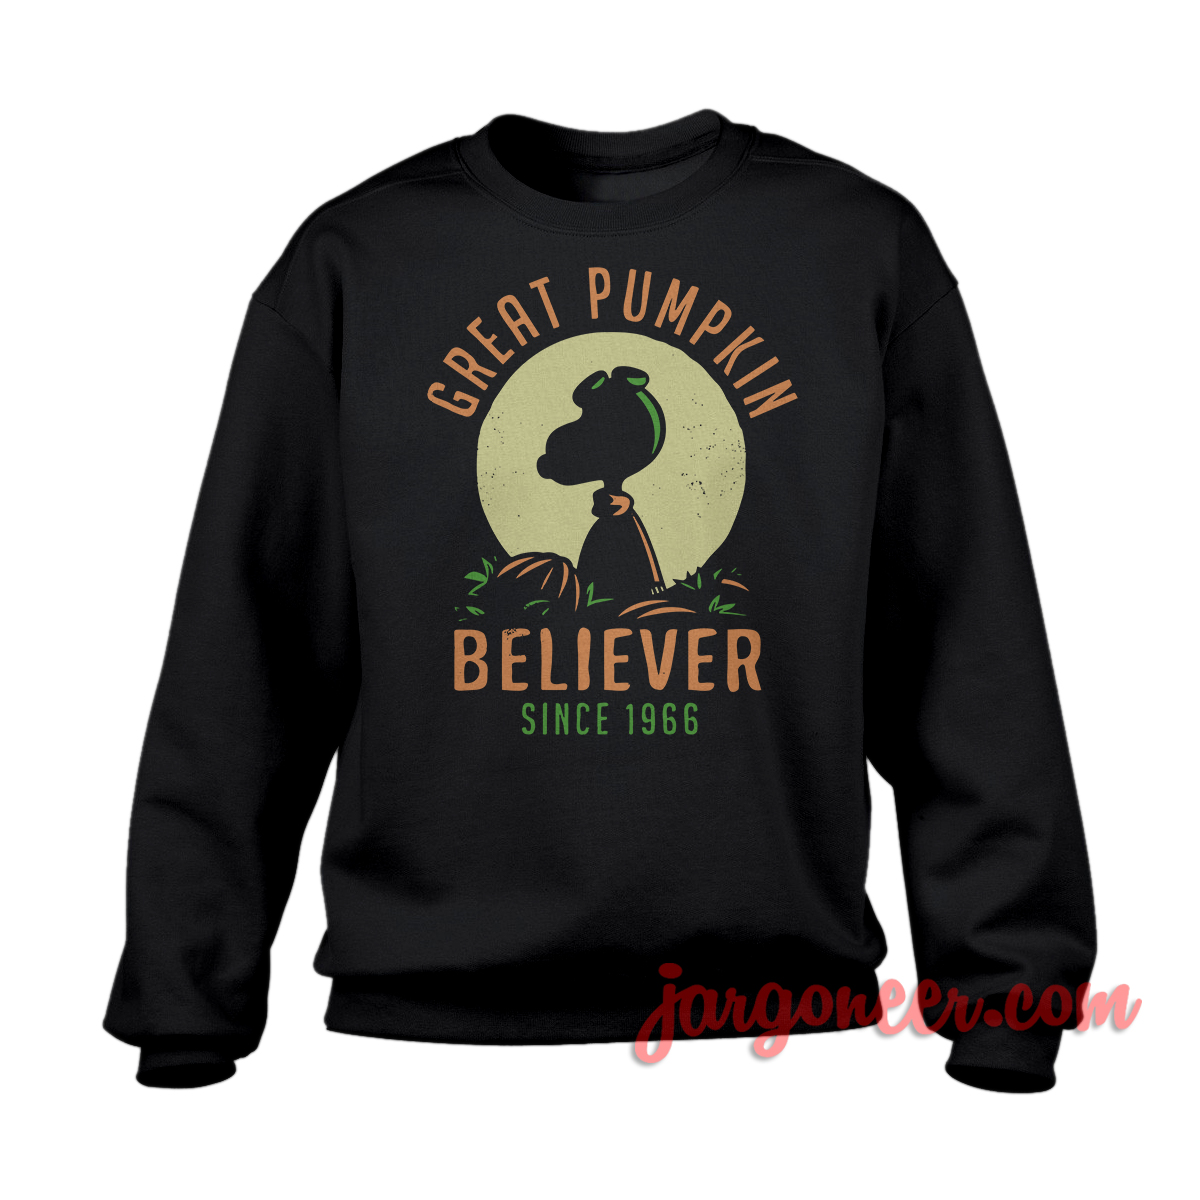 Pumpkin Believer Black SS - Shop Unique Graphic Cool Shirt Designs